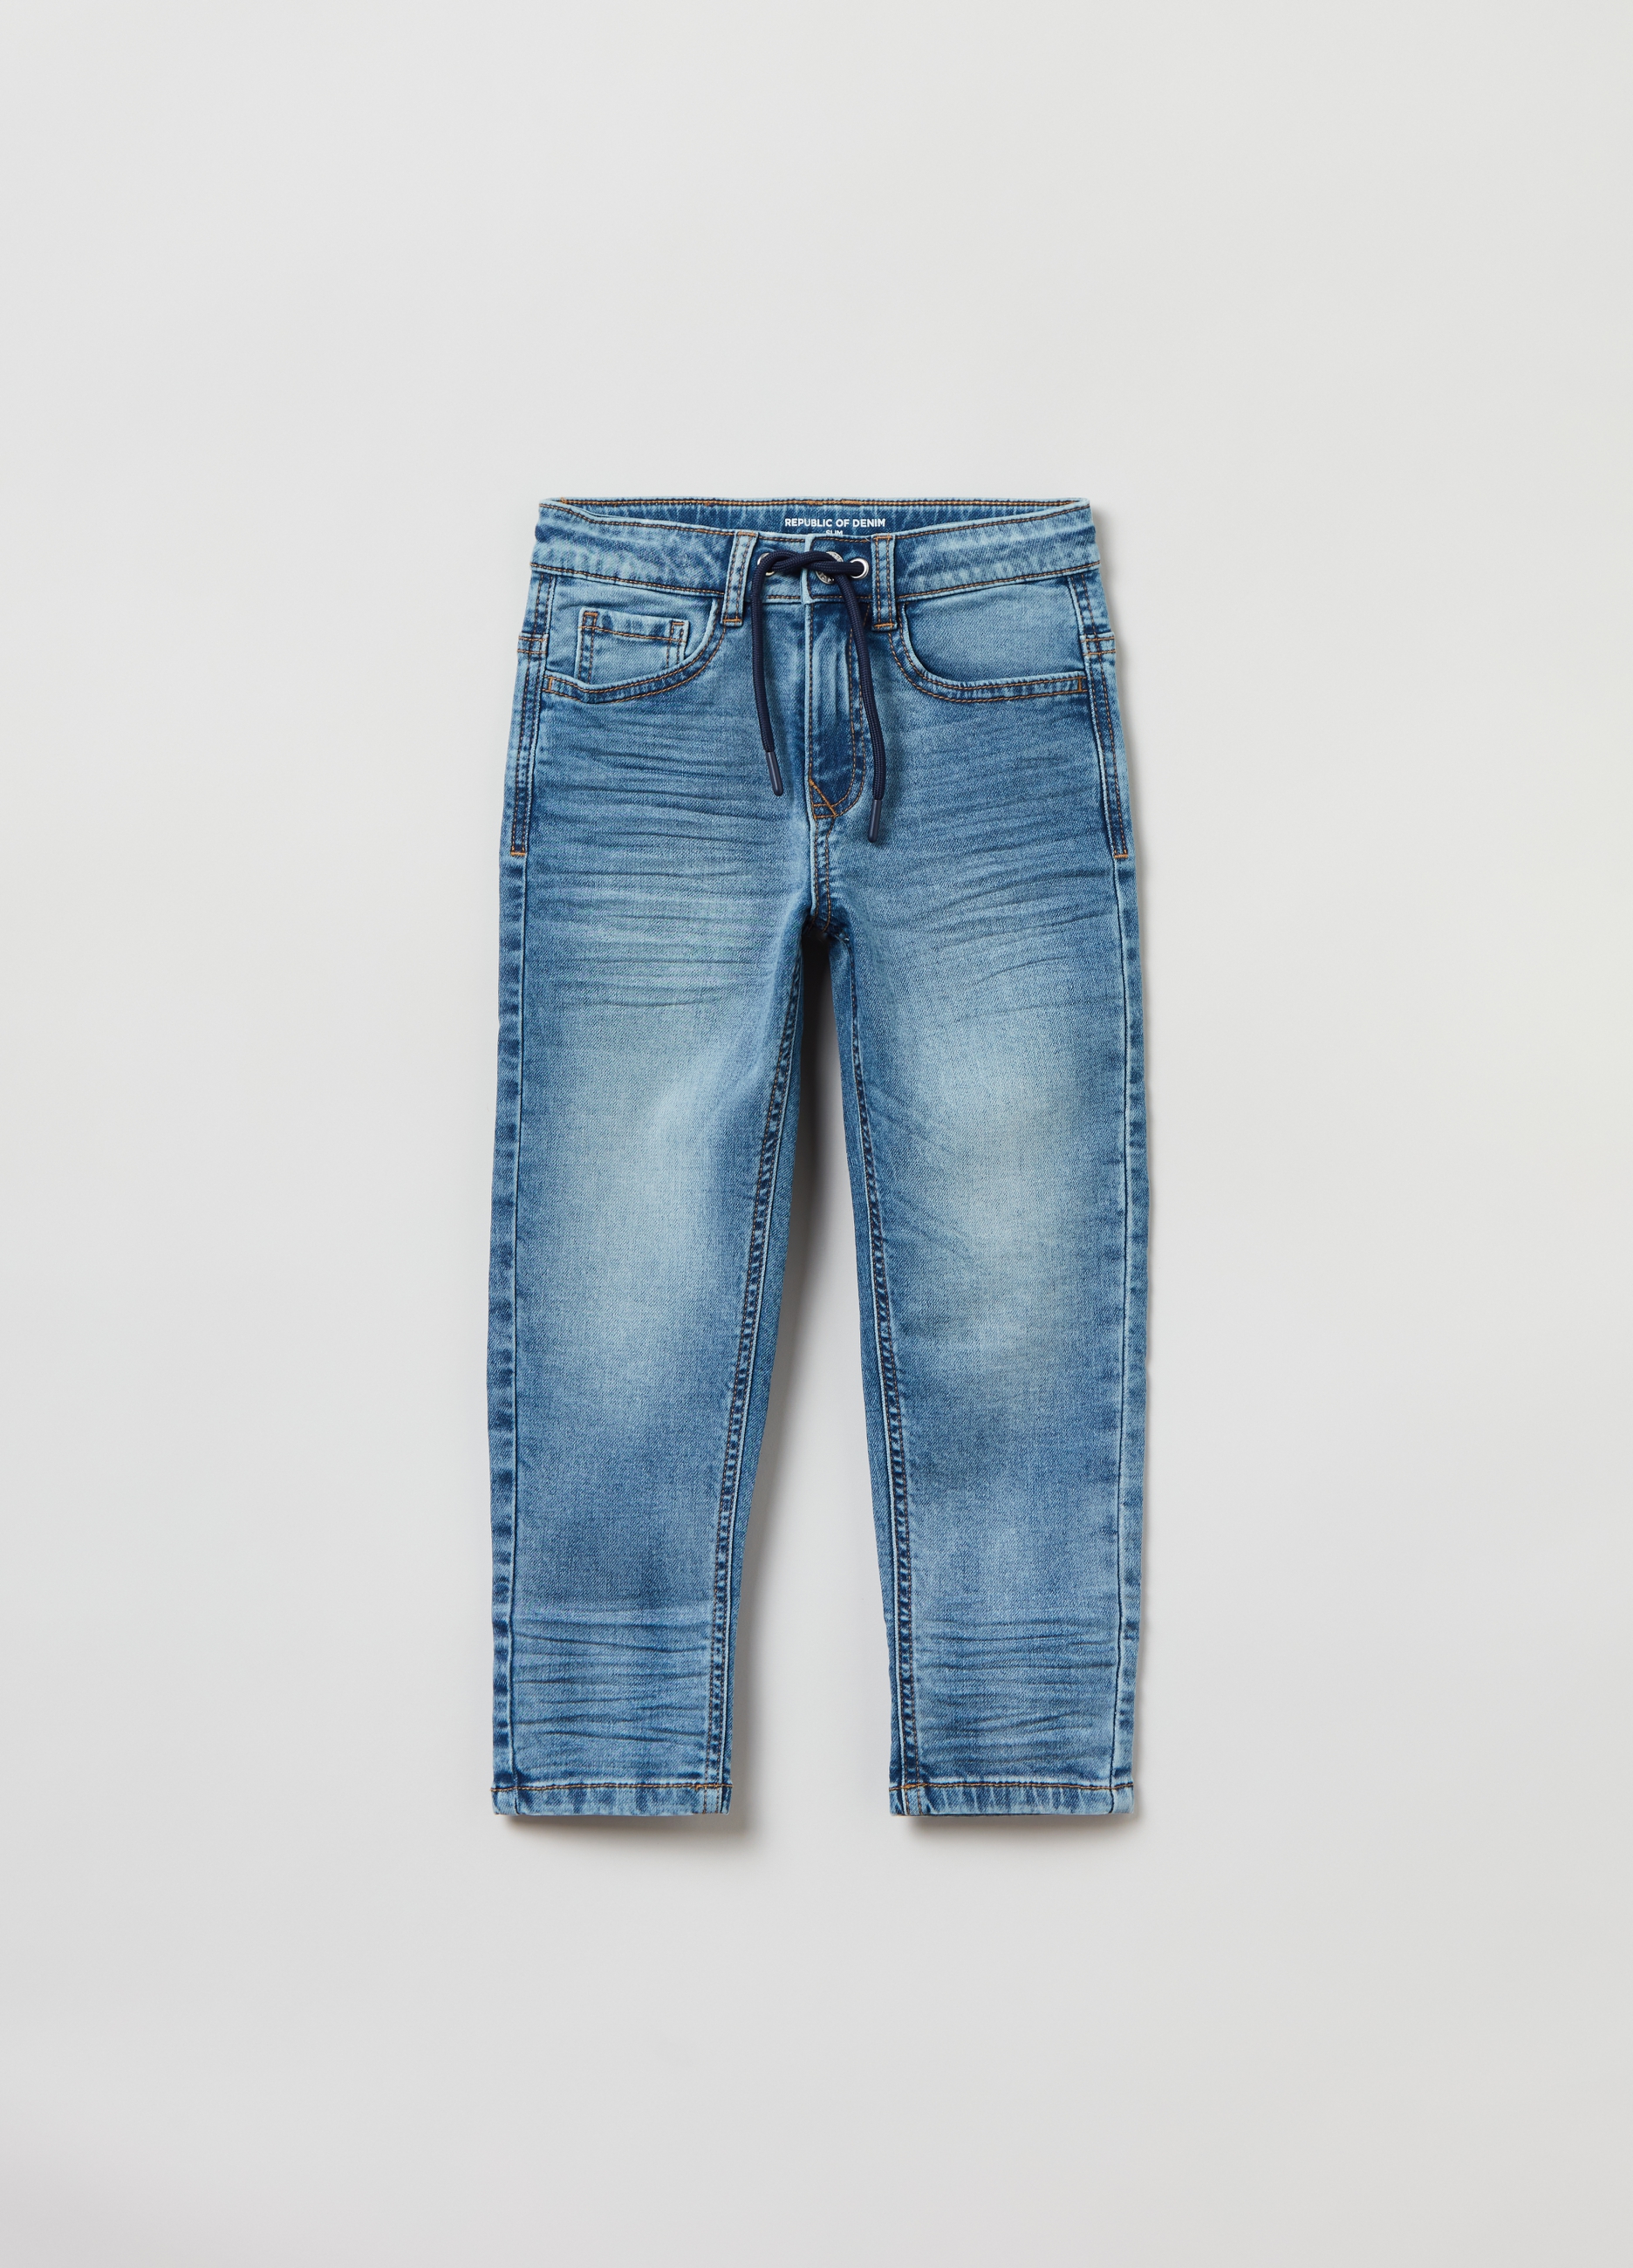 Джинсы OVS для мальчиков, голубые, 5-6 лет, 1823572 джинсы ovs для мальчиков голубые 9 10 лет 1823572